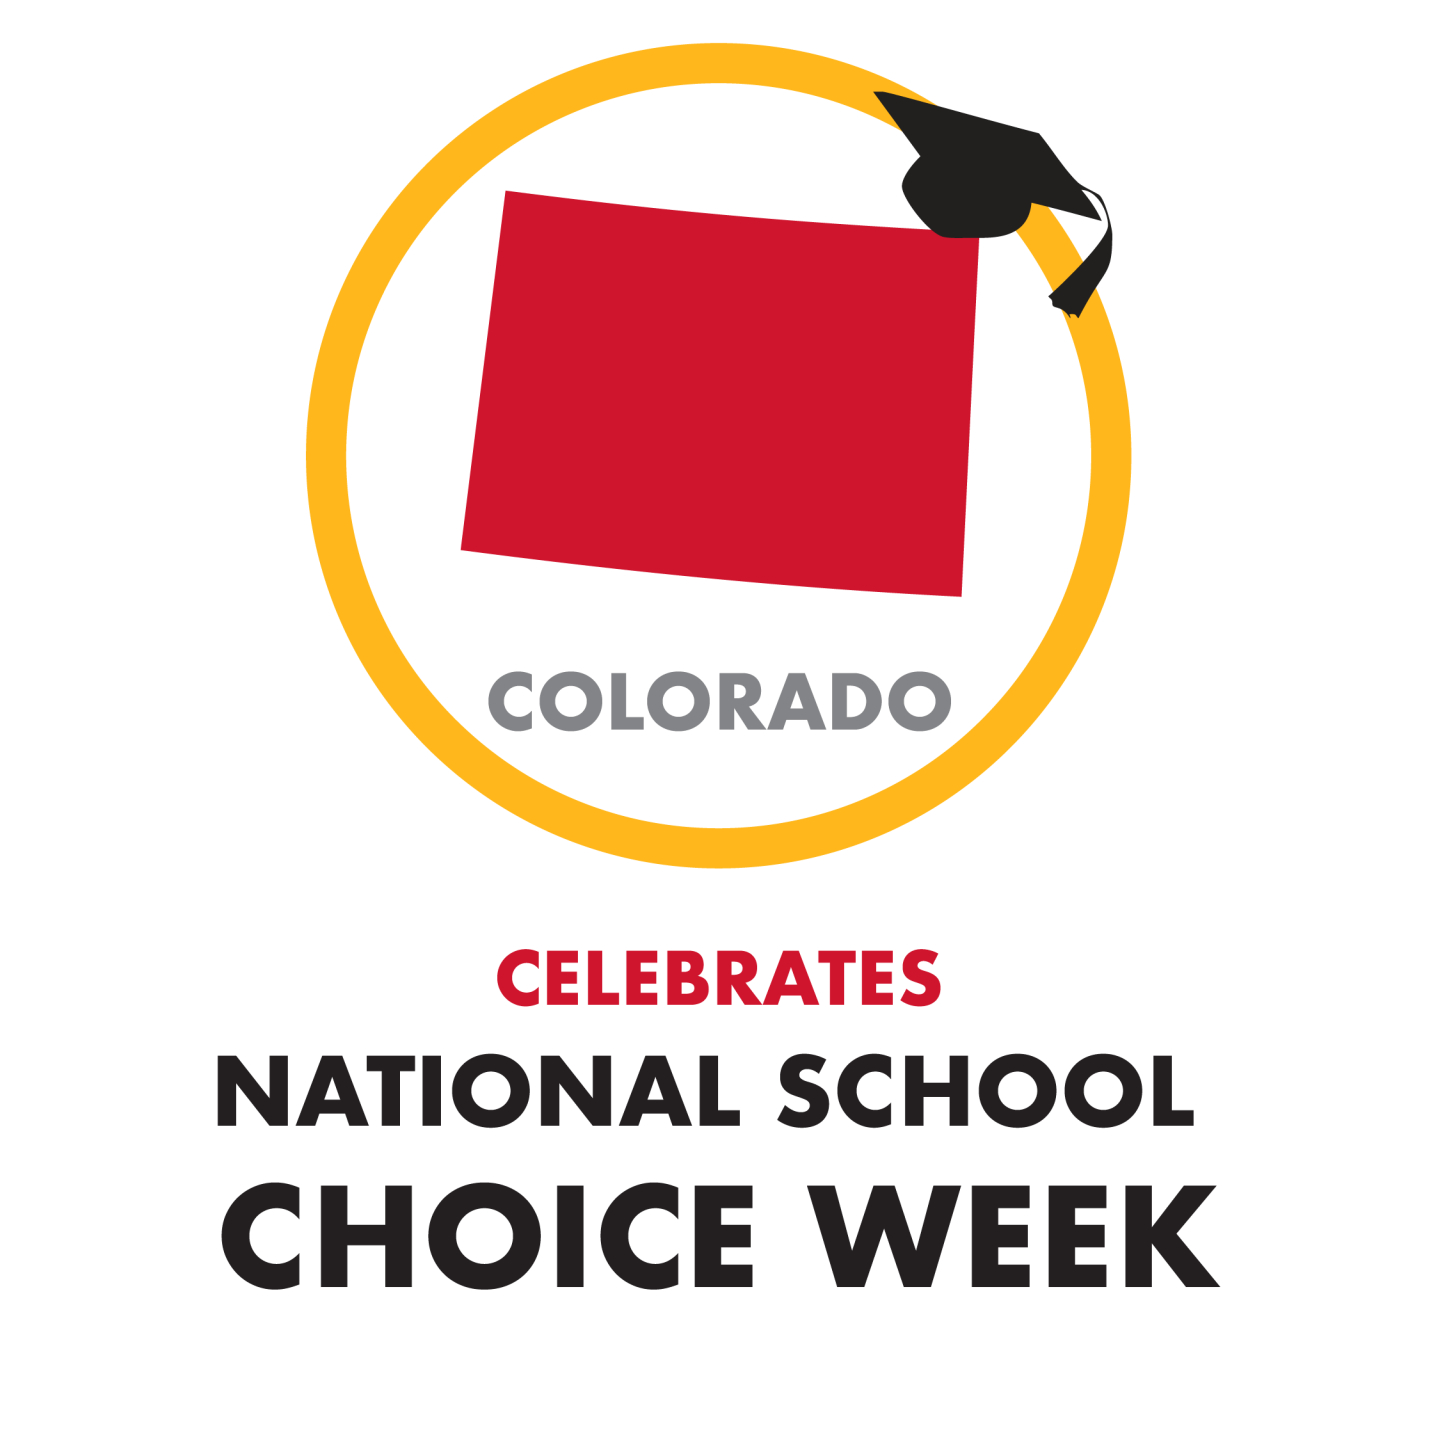 Colorado Springs' observances of National School Choice Week